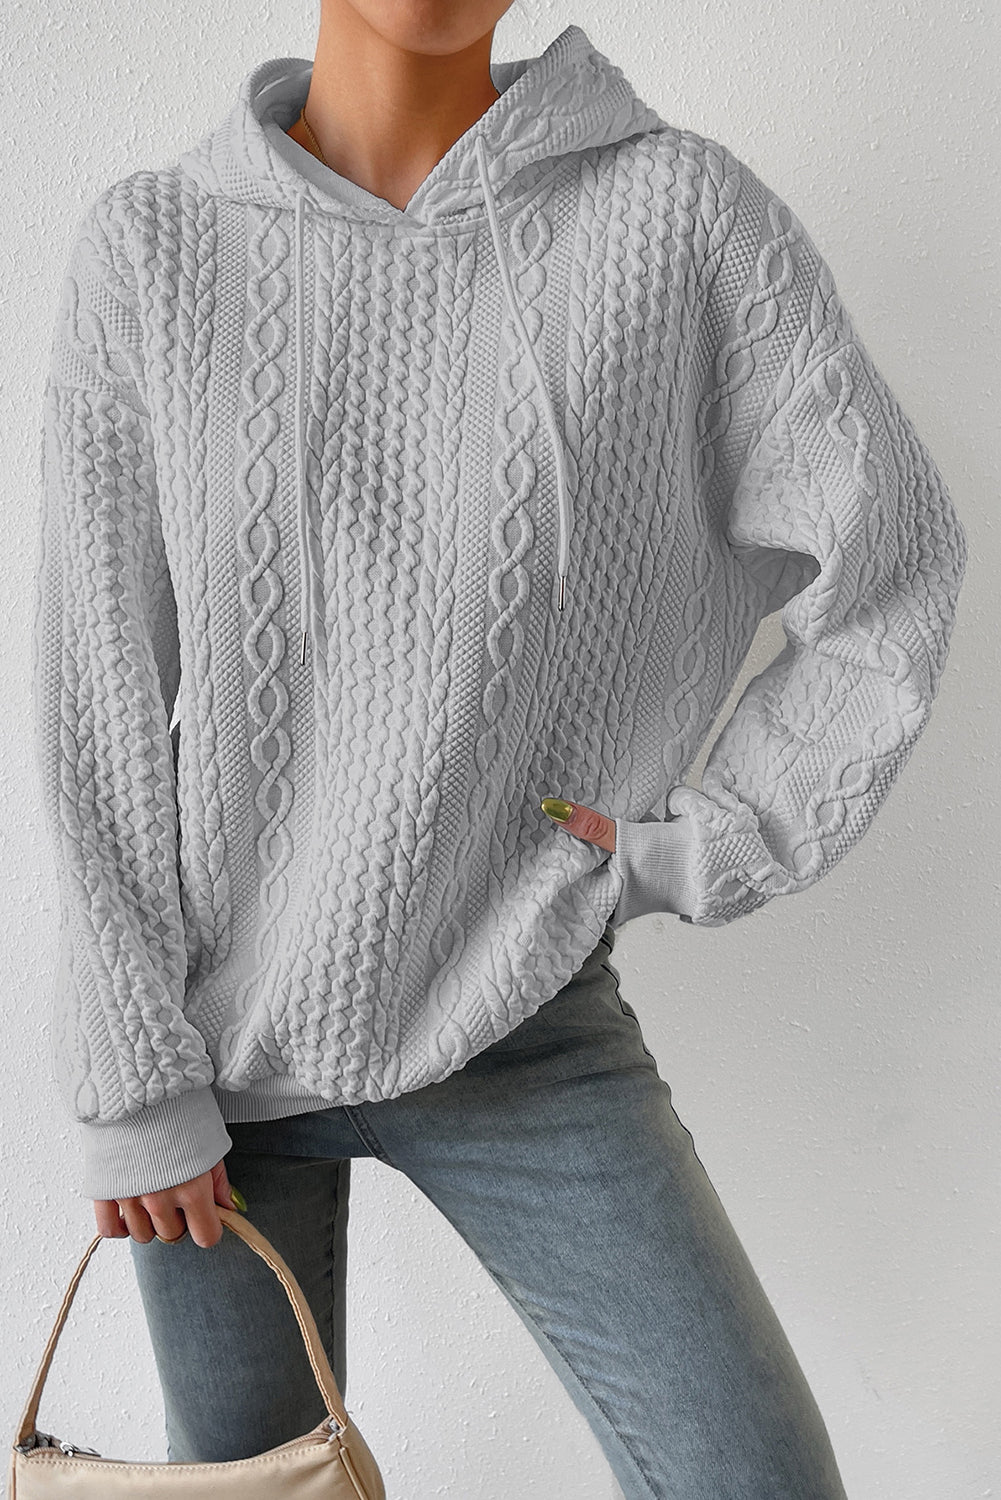 Črn pulover s kapuco z vrvico za prosti čas s teksturo kabla